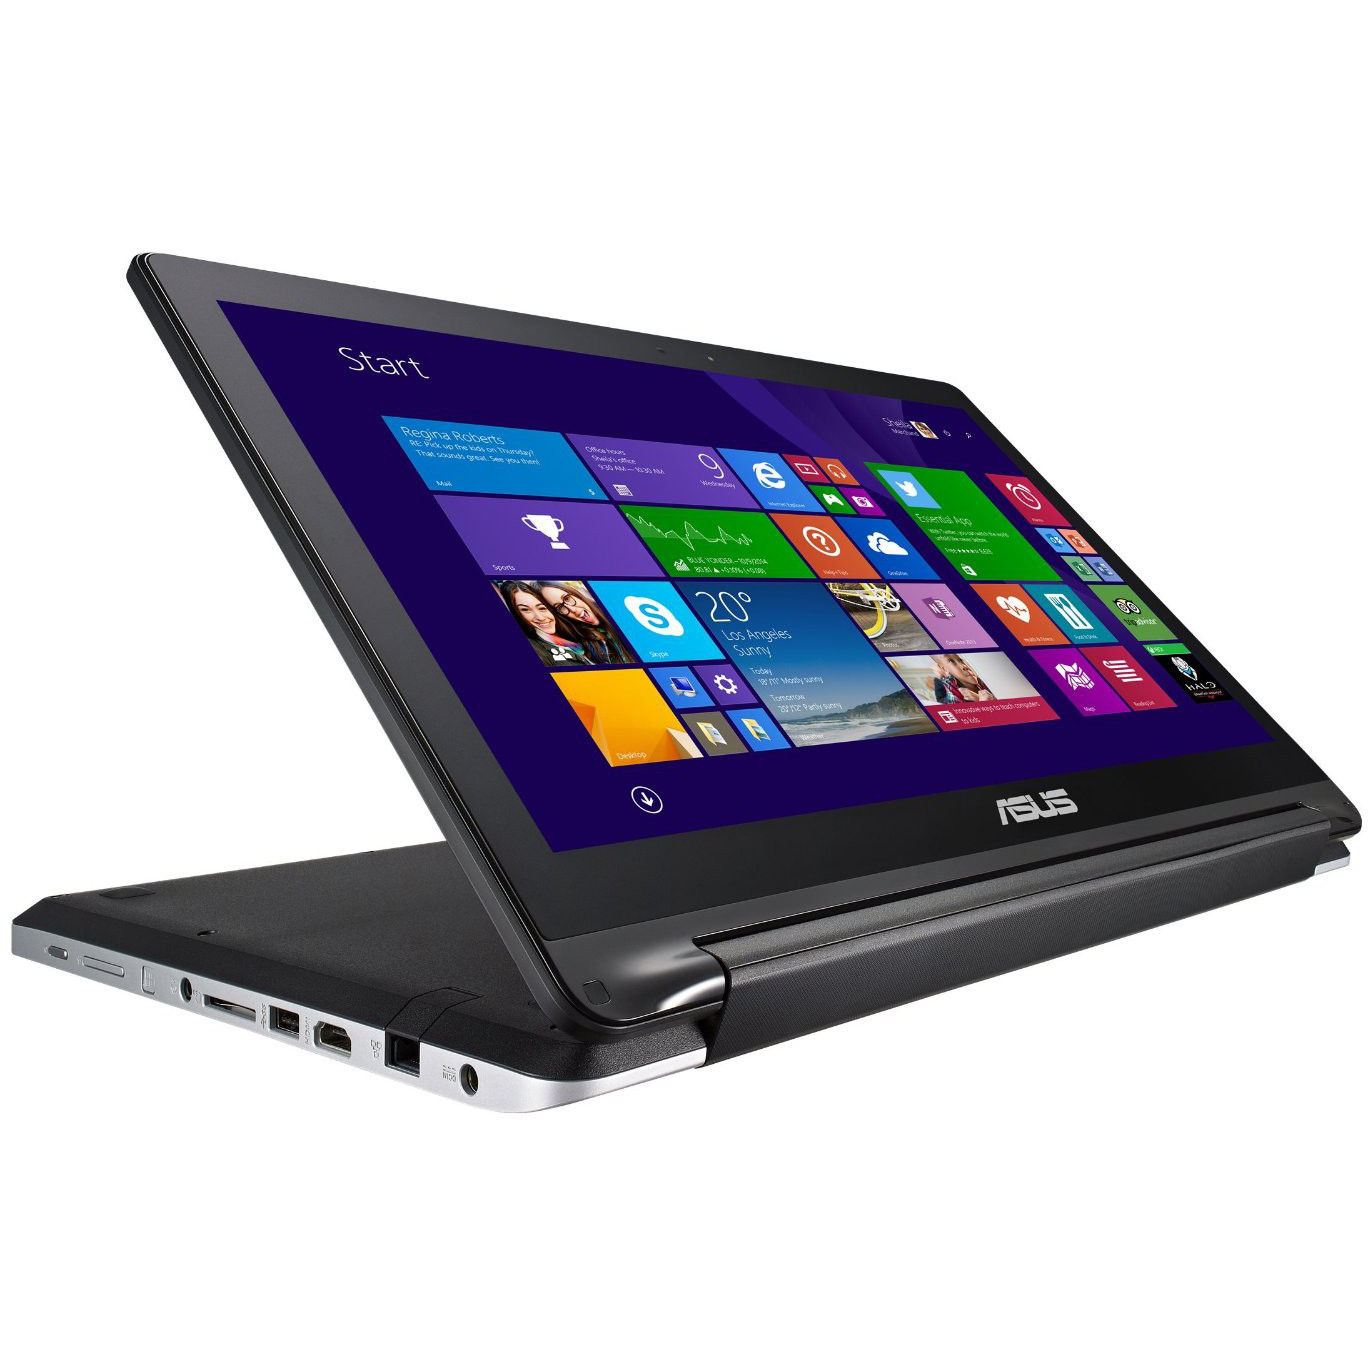  Laptop 2 In 1 Asus TP550LA-CJ124H, Intel Core i5-5200U, 6GB DDR3, HDD 1TB, Intel HD Graphics, Windows 8 